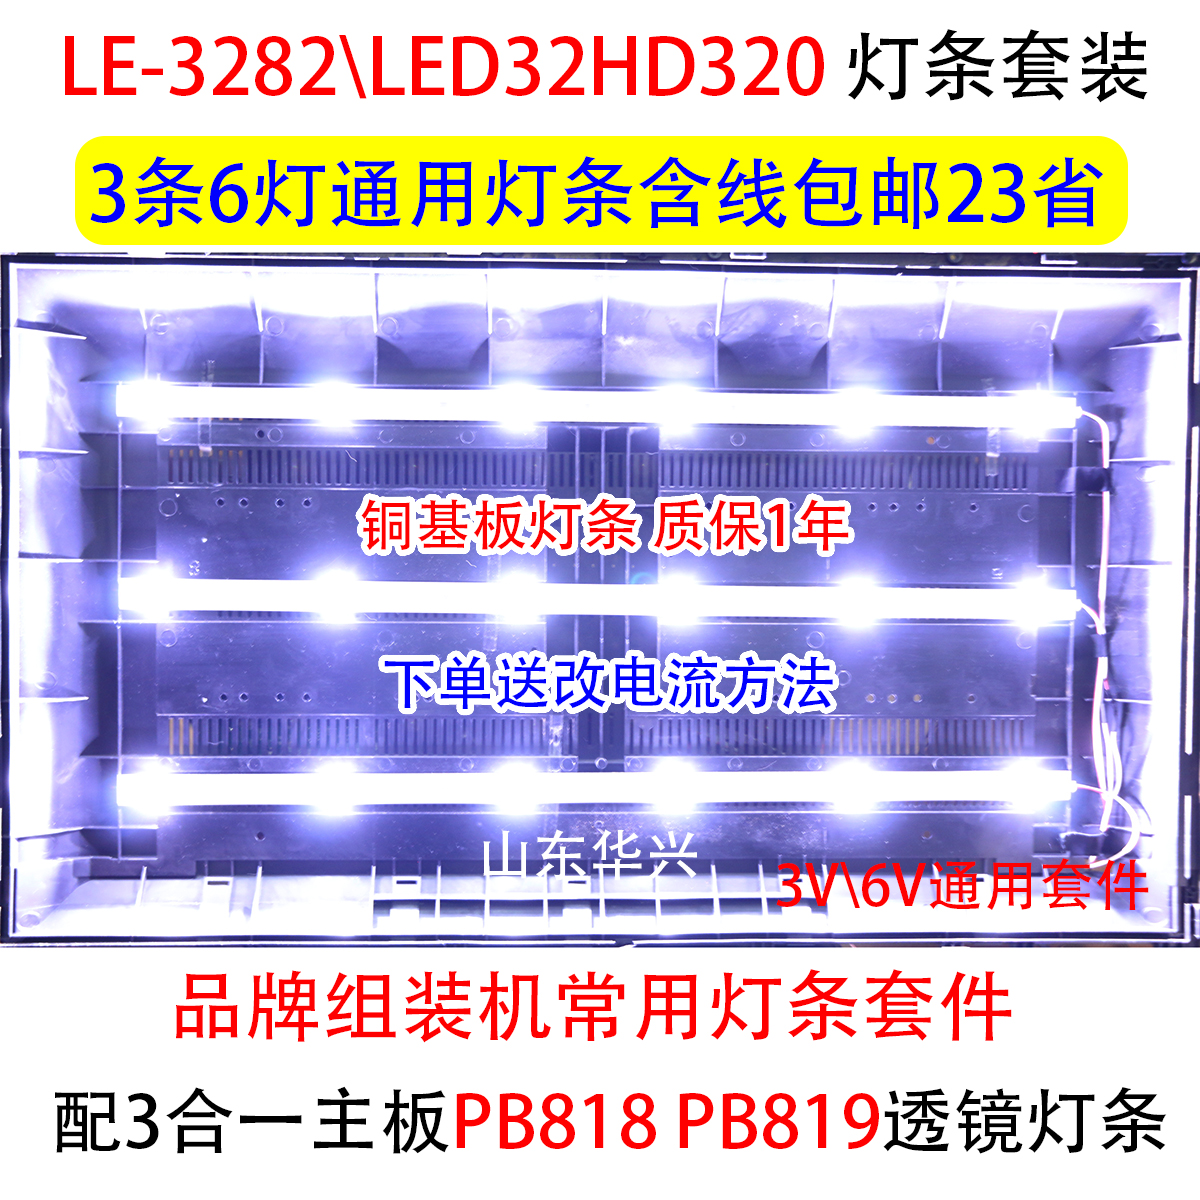 LED32HD320 LE-3282夏新先科7320 L3210 32寸6灯LED液晶电视灯条